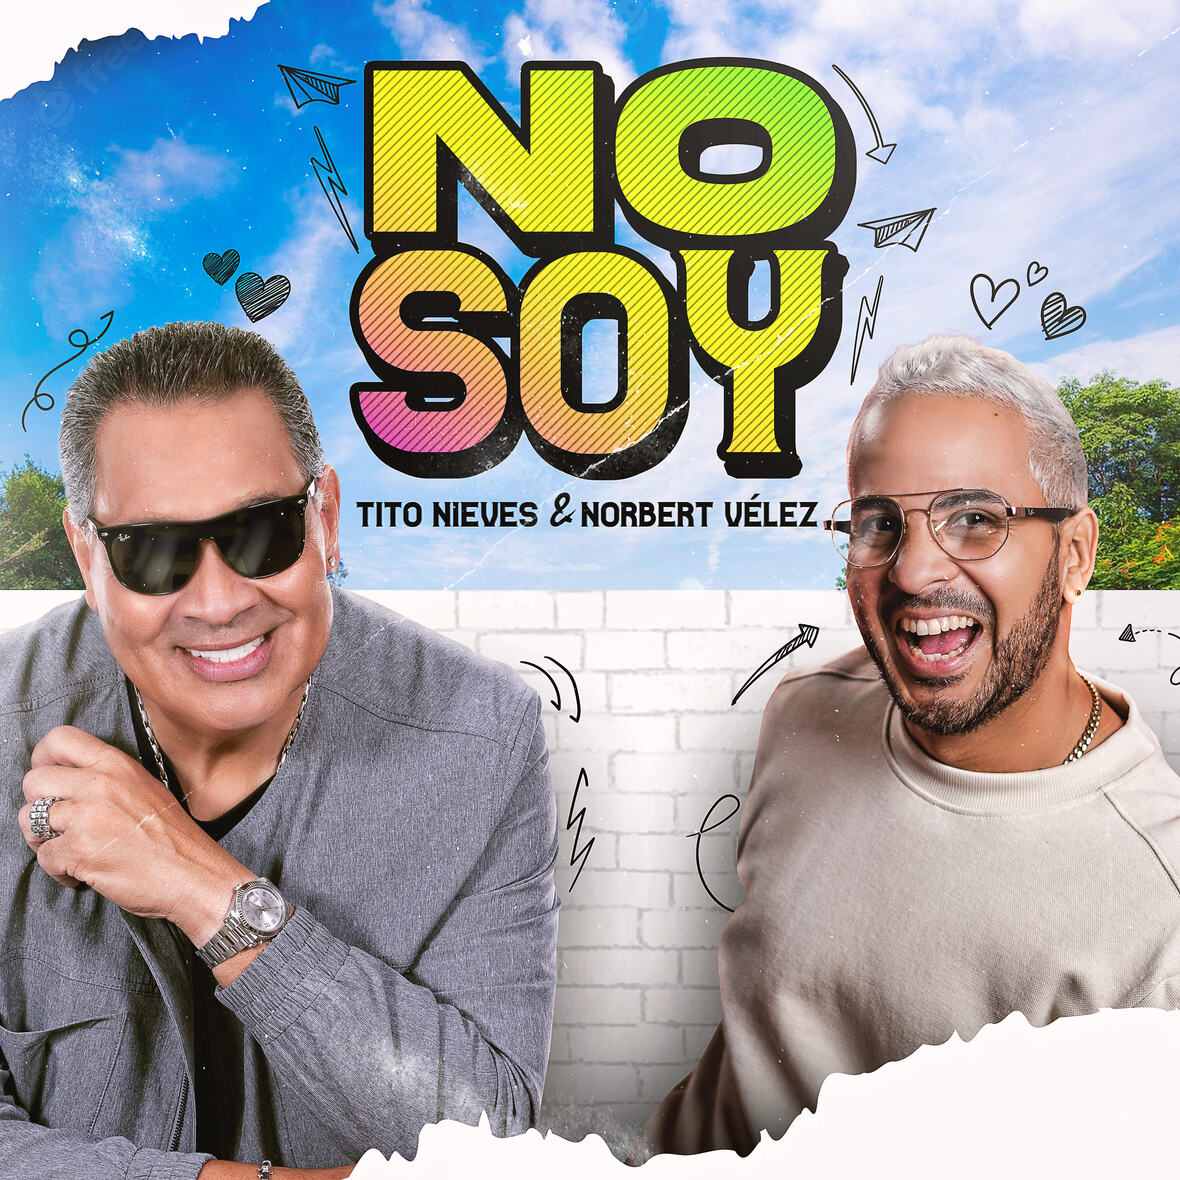 TITO NIEVES junto a Norbert Vélez presentan sencillo “No Soy”